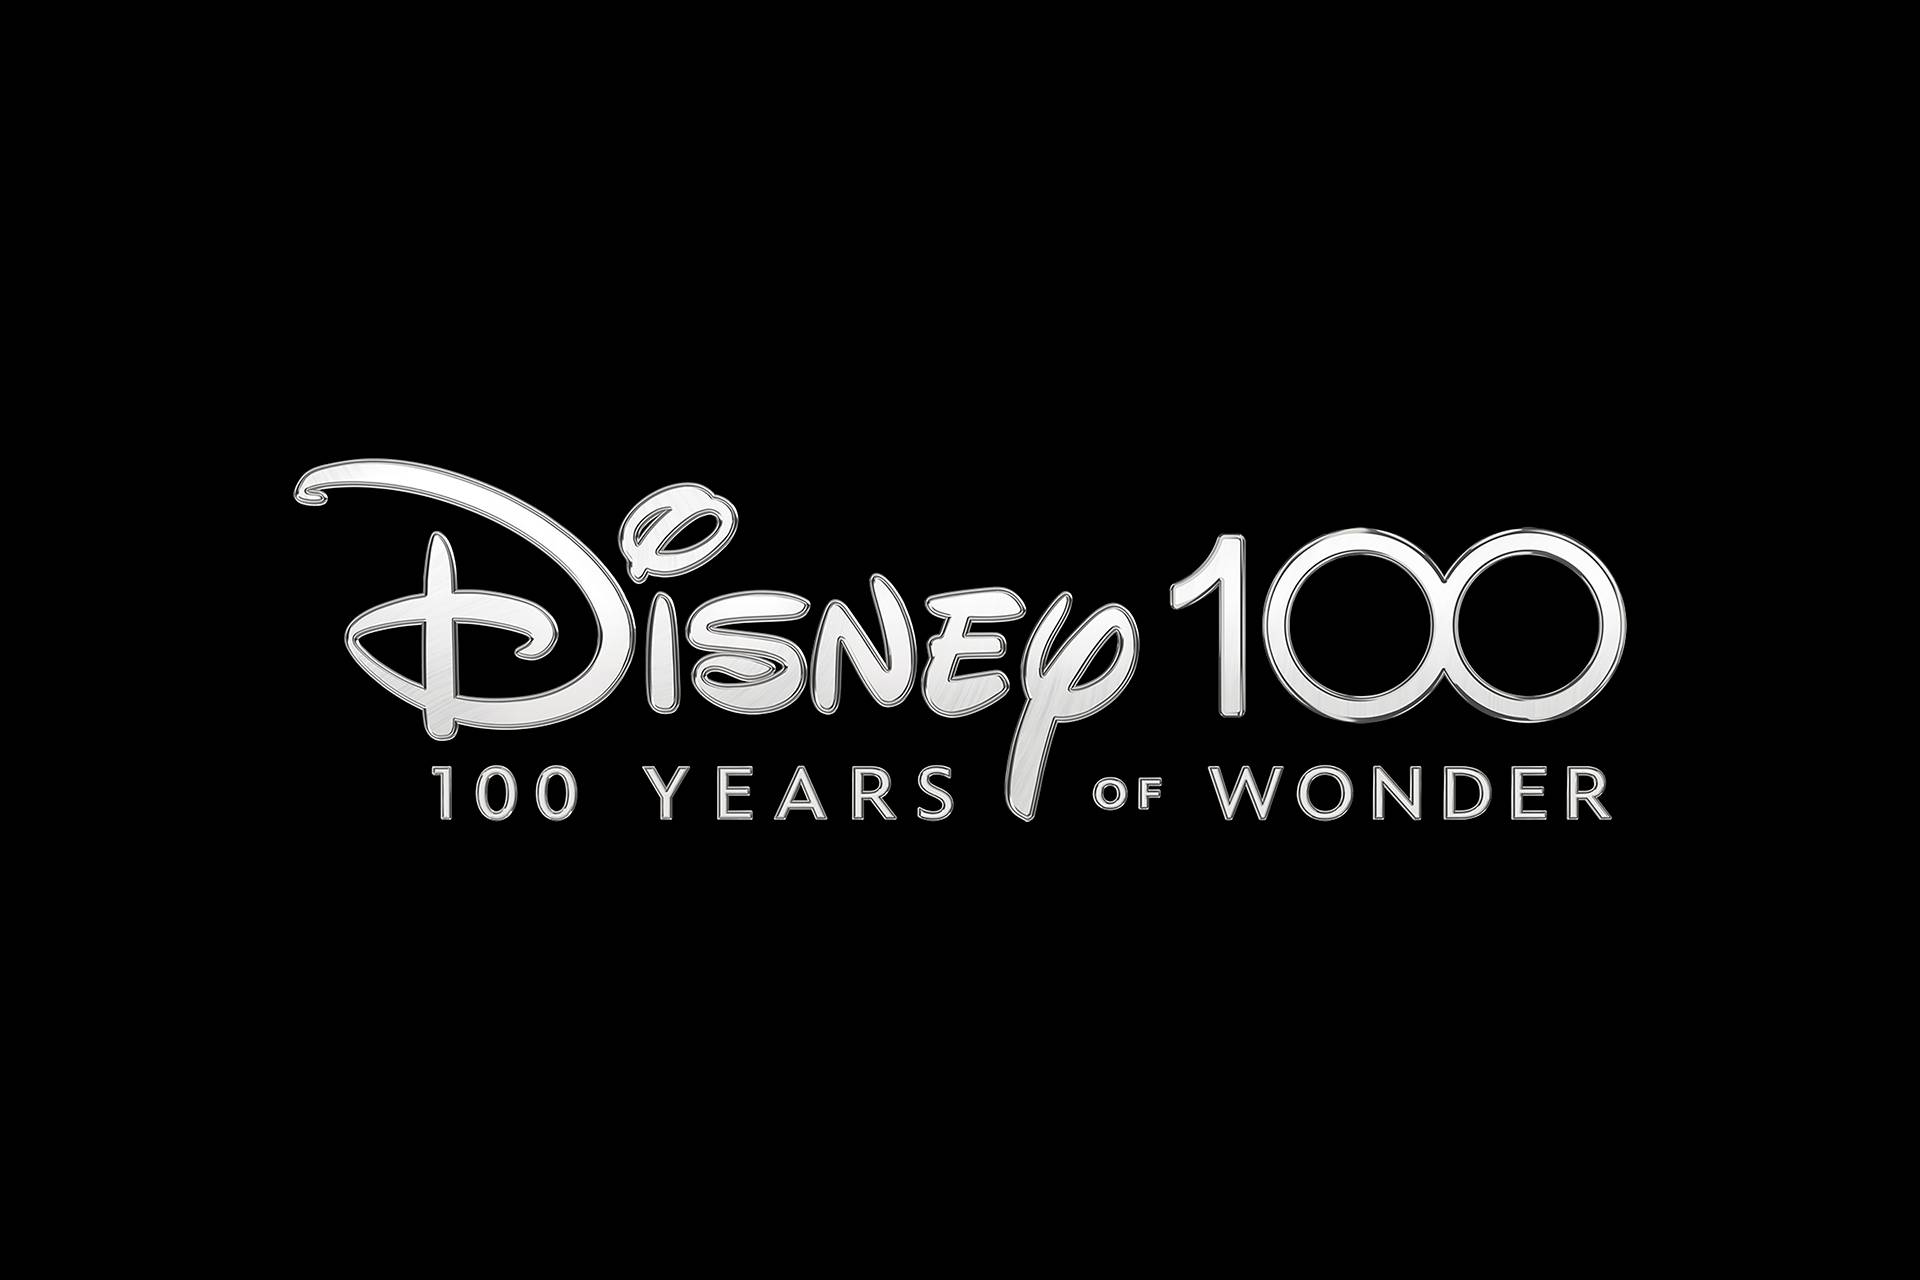 Disney 100 Years of Wonder logo